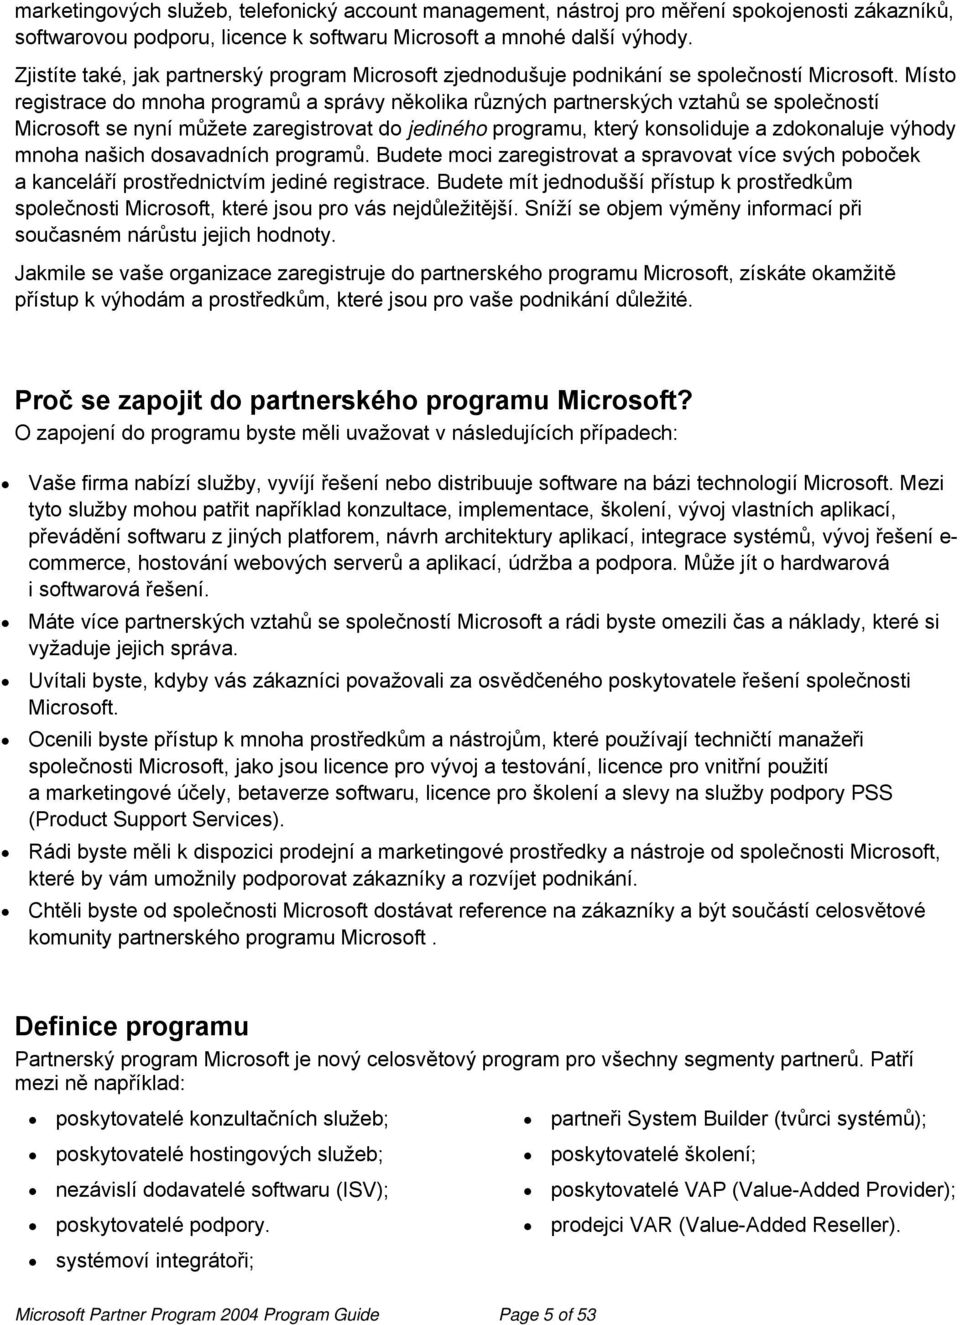 Místo registrace do mnoha programů a správy několika různých partnerských vztahů se společností Microsoft se nyní můžete zaregistrovat do jediného programu, který konsoliduje a zdokonaluje výhody